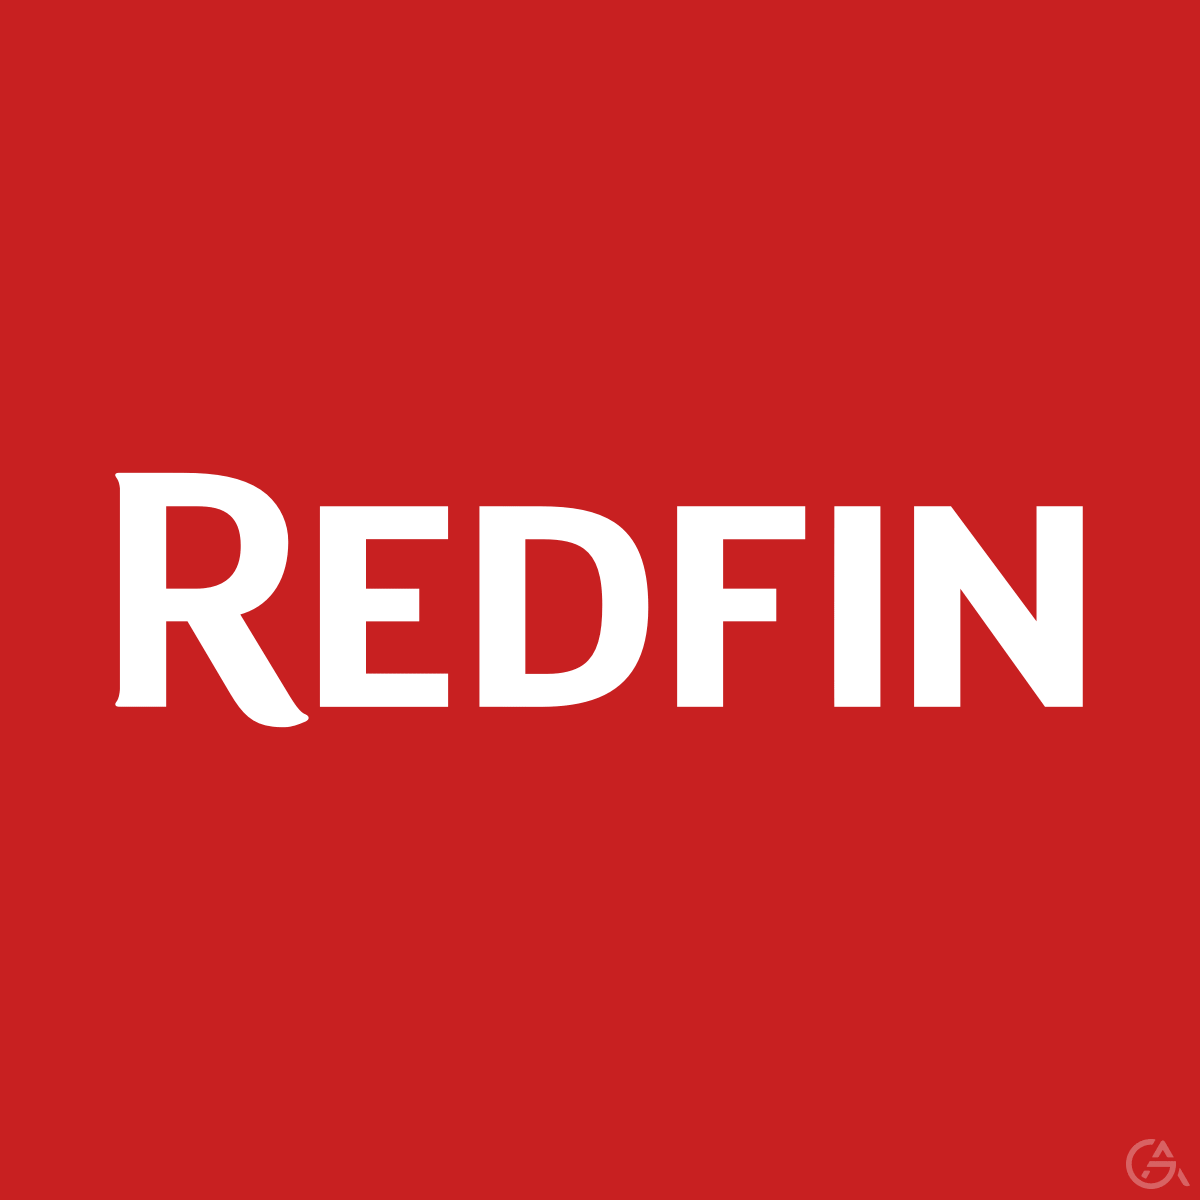 Помощь в привлечении инвестиций "Redfin" - GrandActive